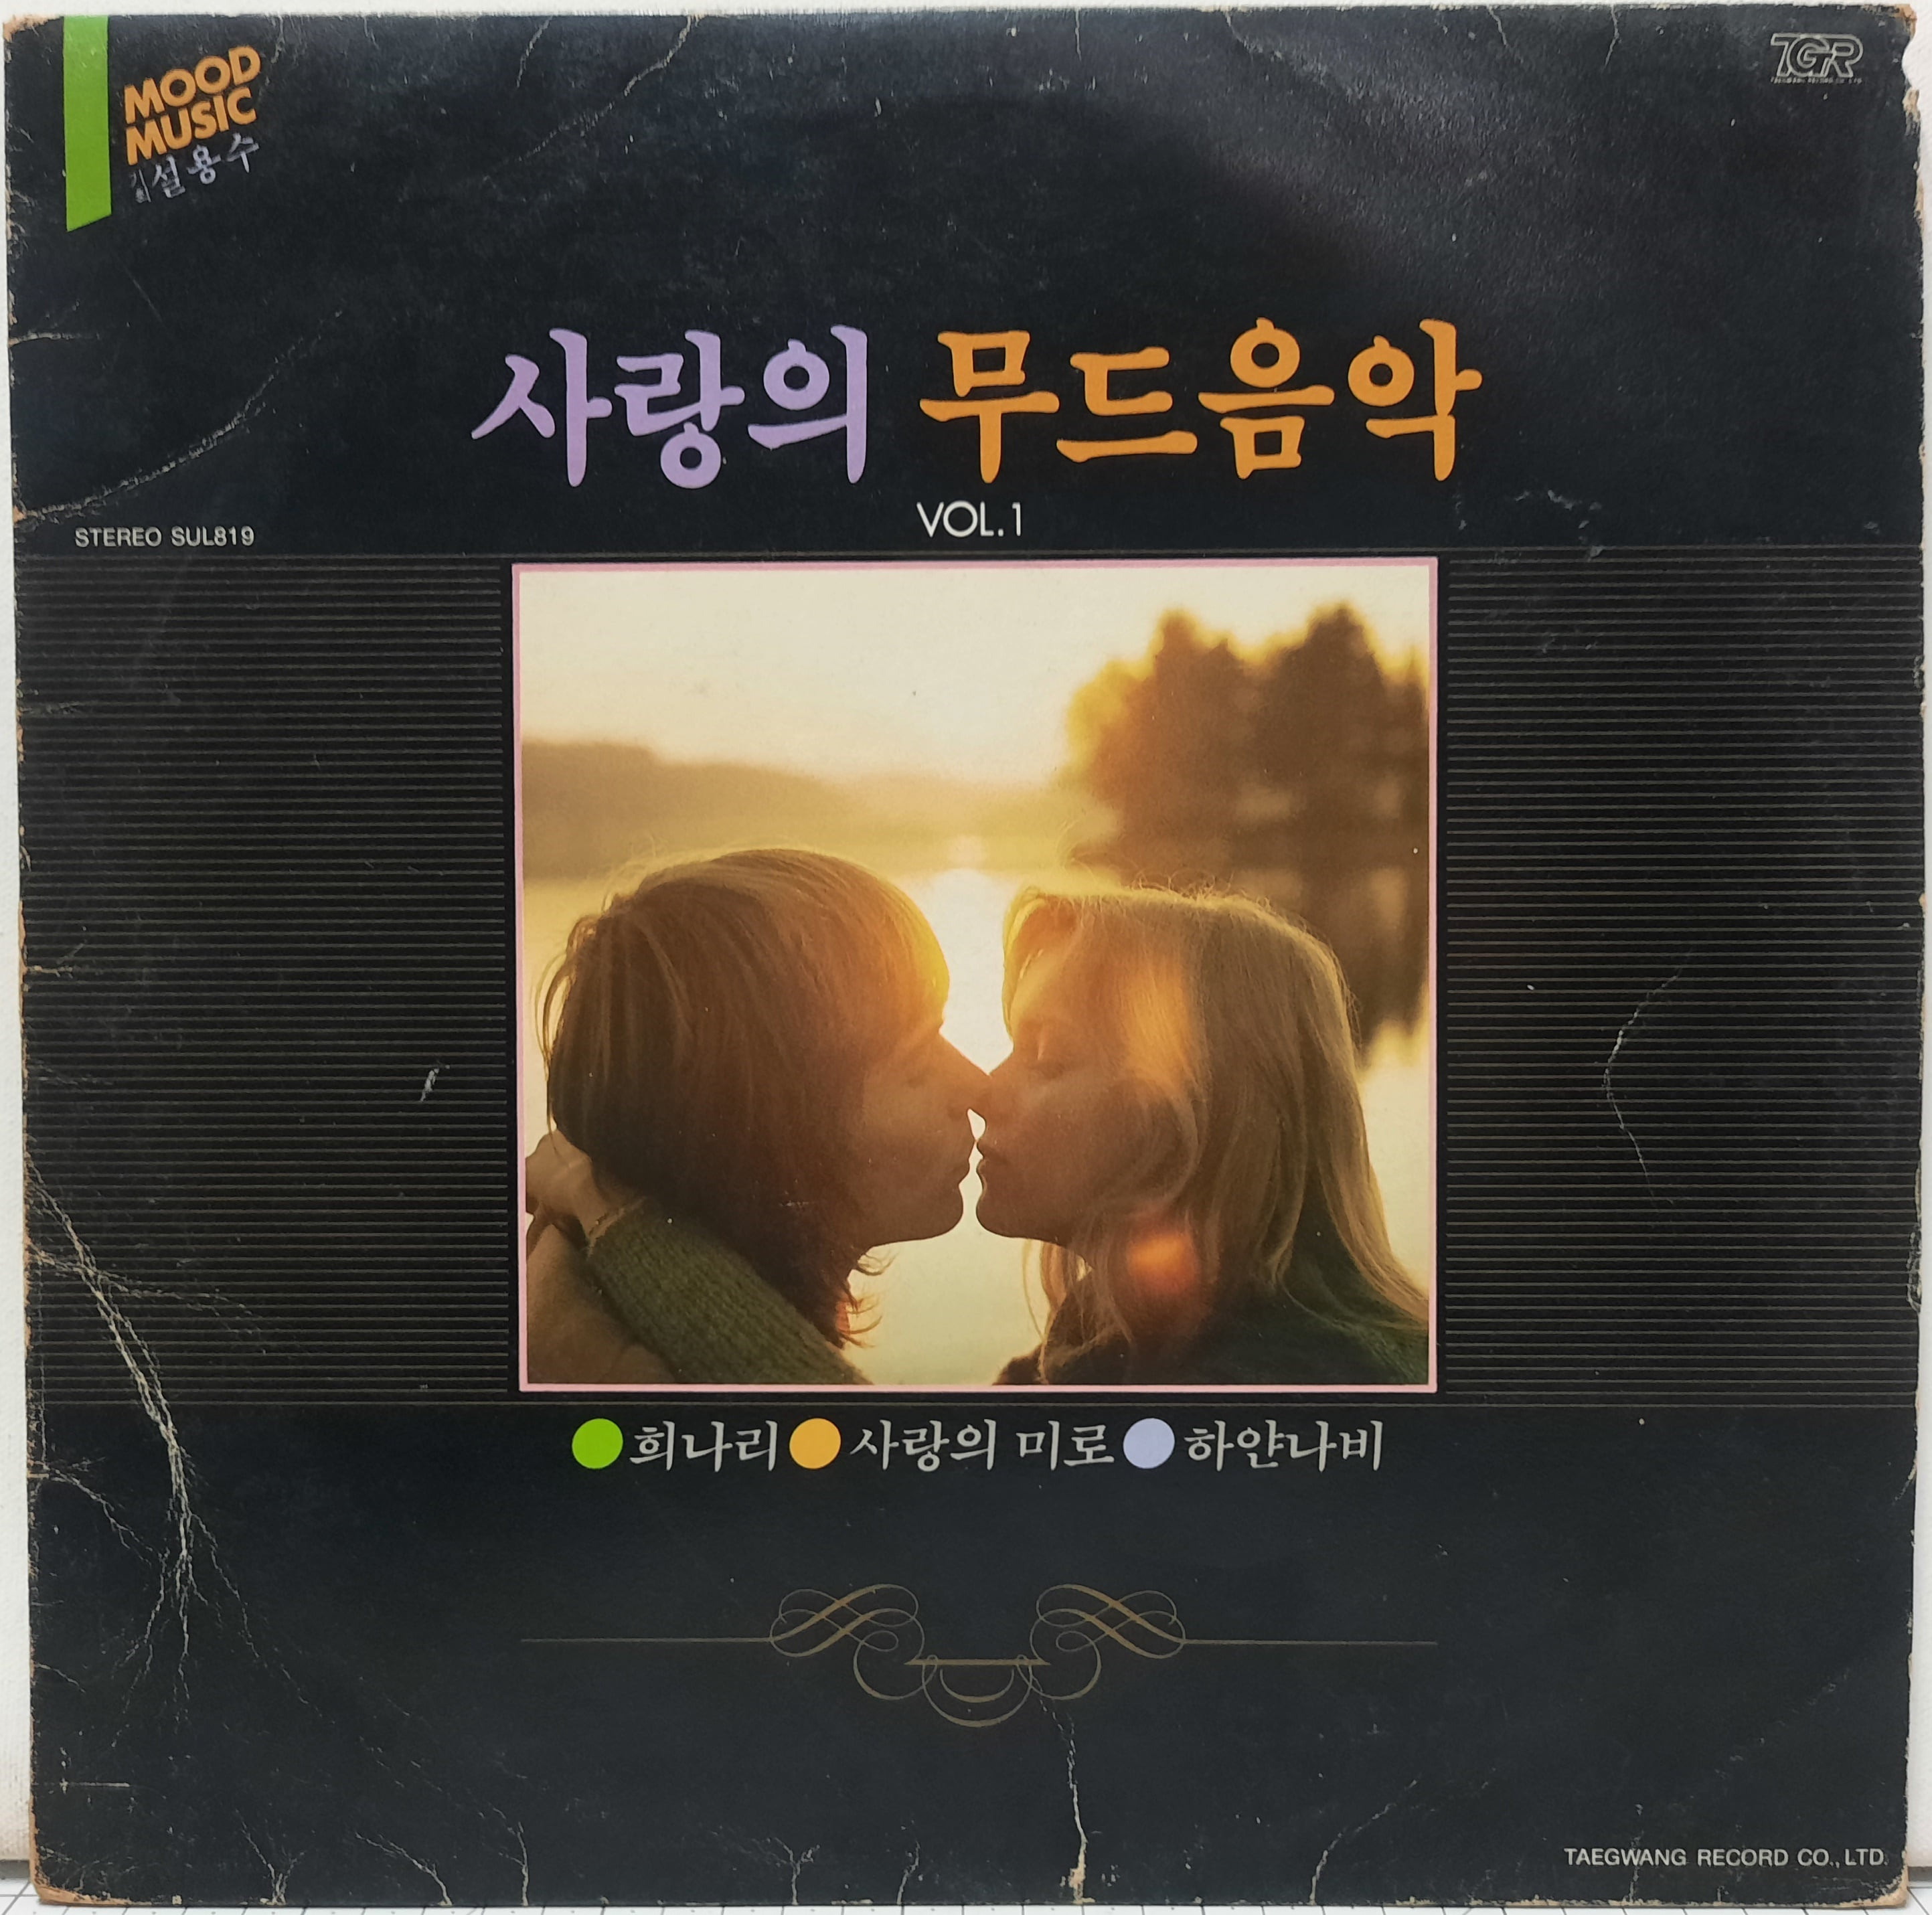 사랑의 무드음악 vol.1 / 희나리 사랑의 미로 하얀나비